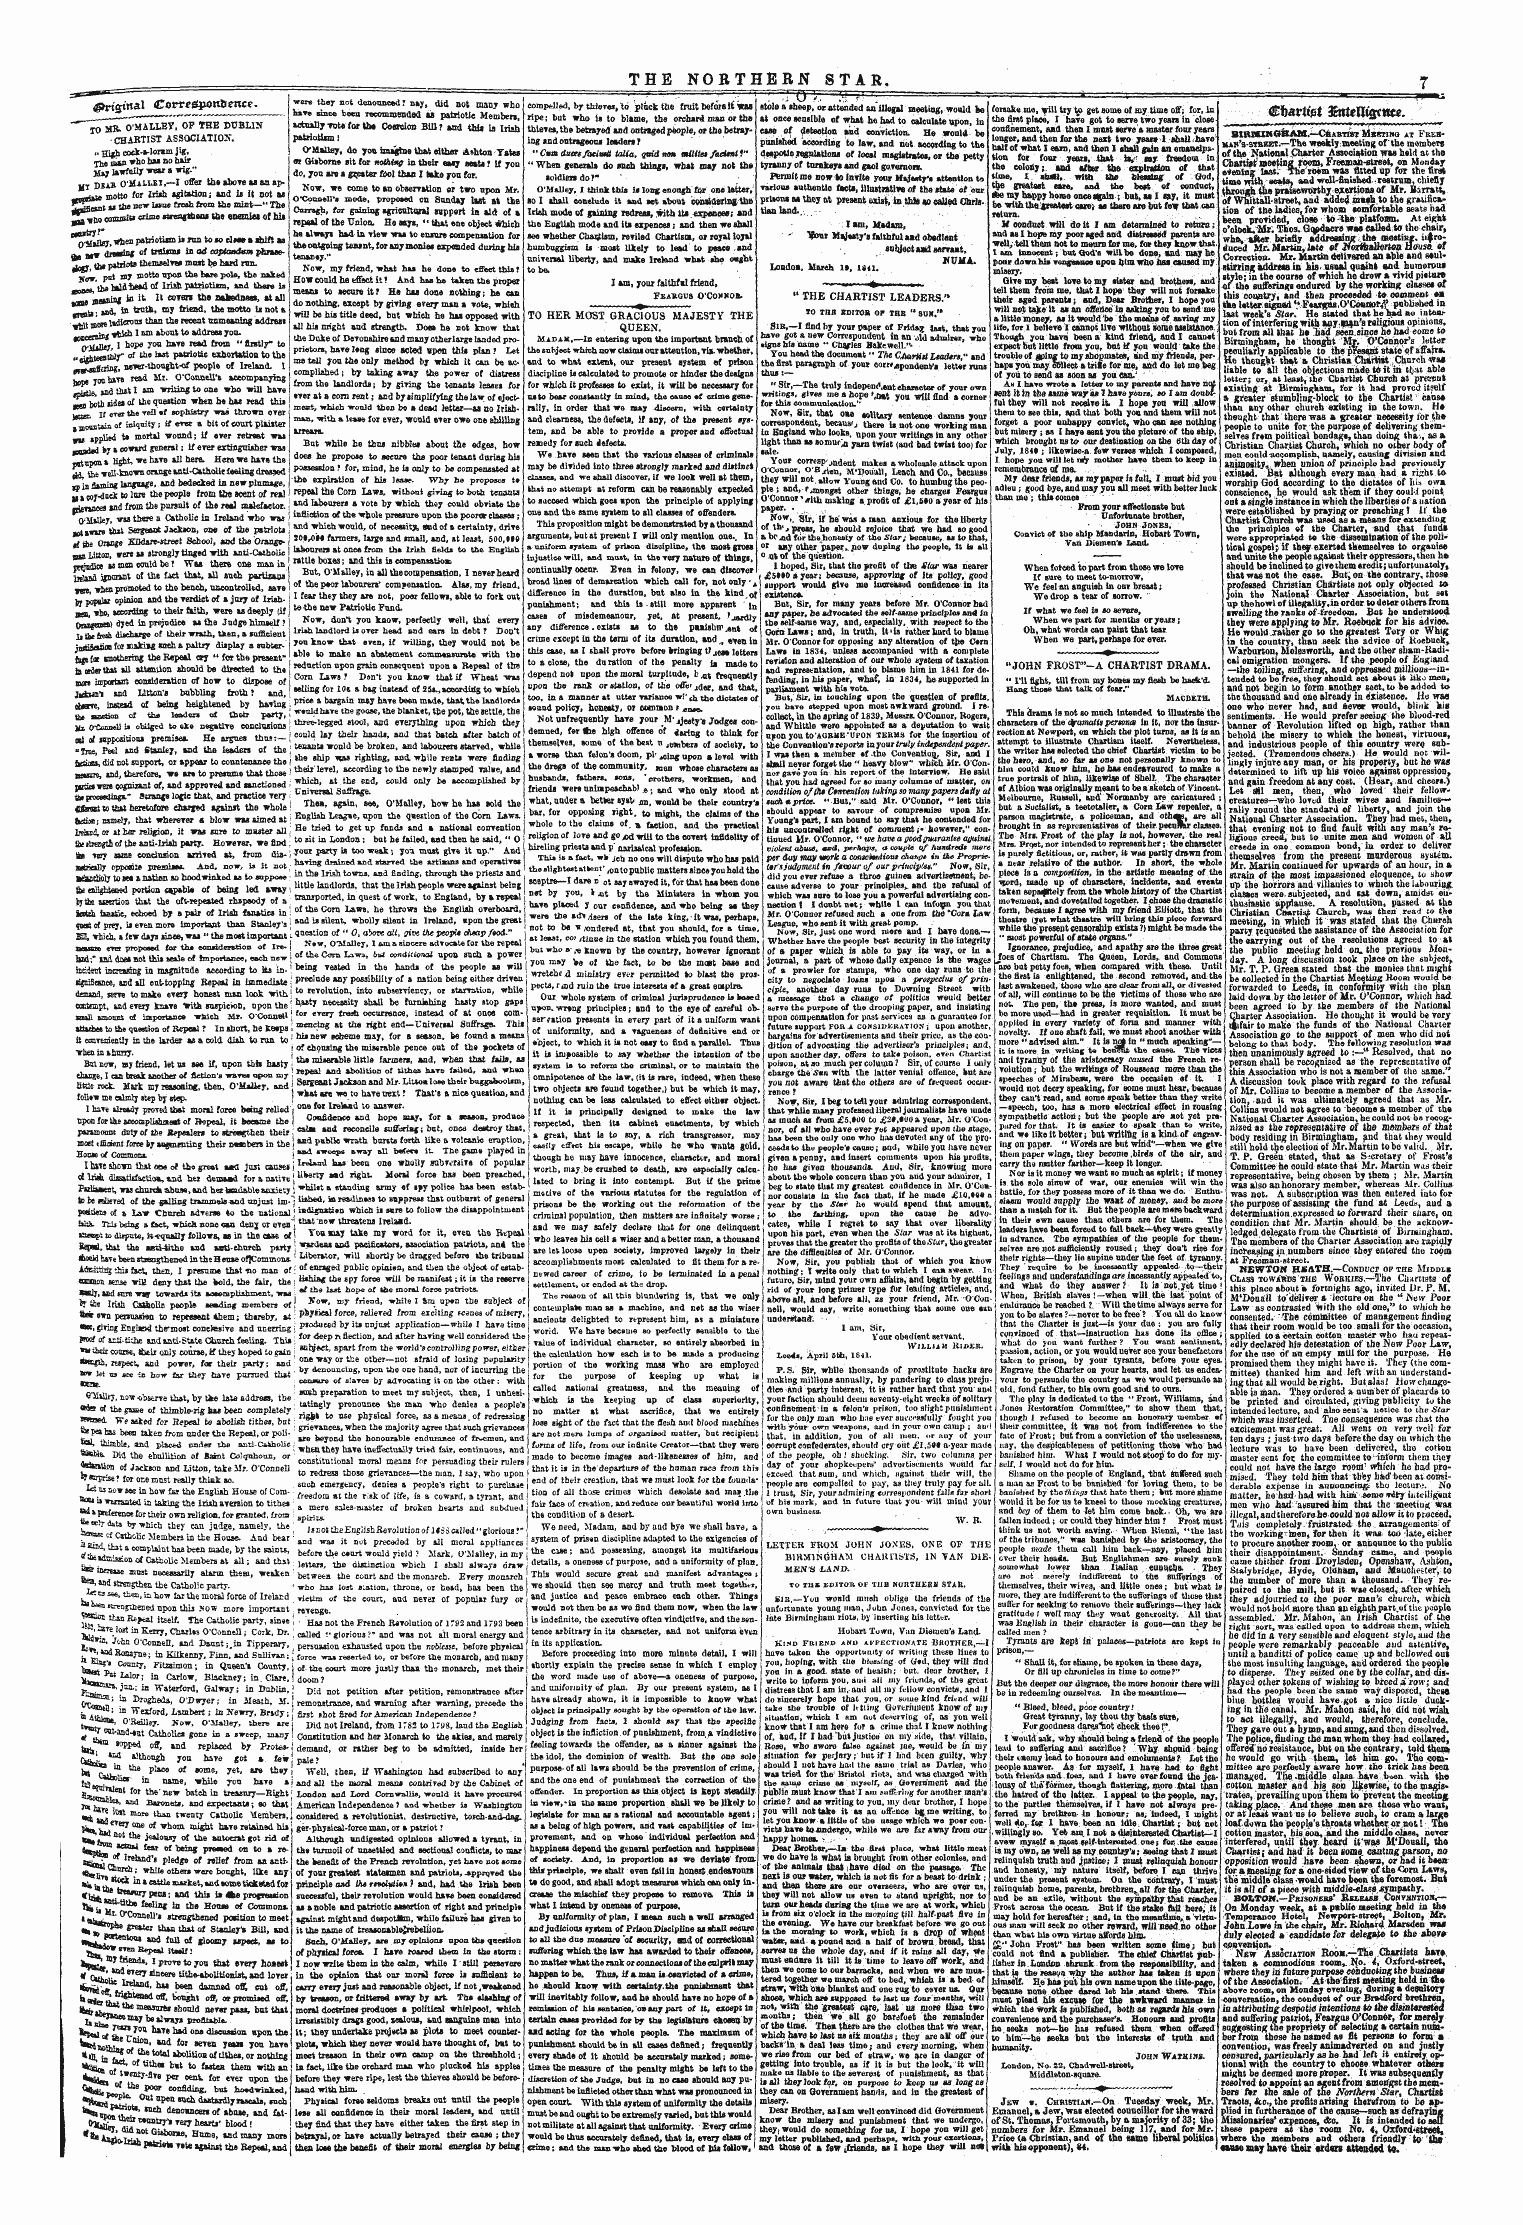 Northern Star (1837-1852): jS F Y, 1st edition - - ¦ -1. ¦ ¦ ' — ^ _F__ ~ ' ¦¦ —---. — £Jrt£Tnai Cowe&Potmence. _______